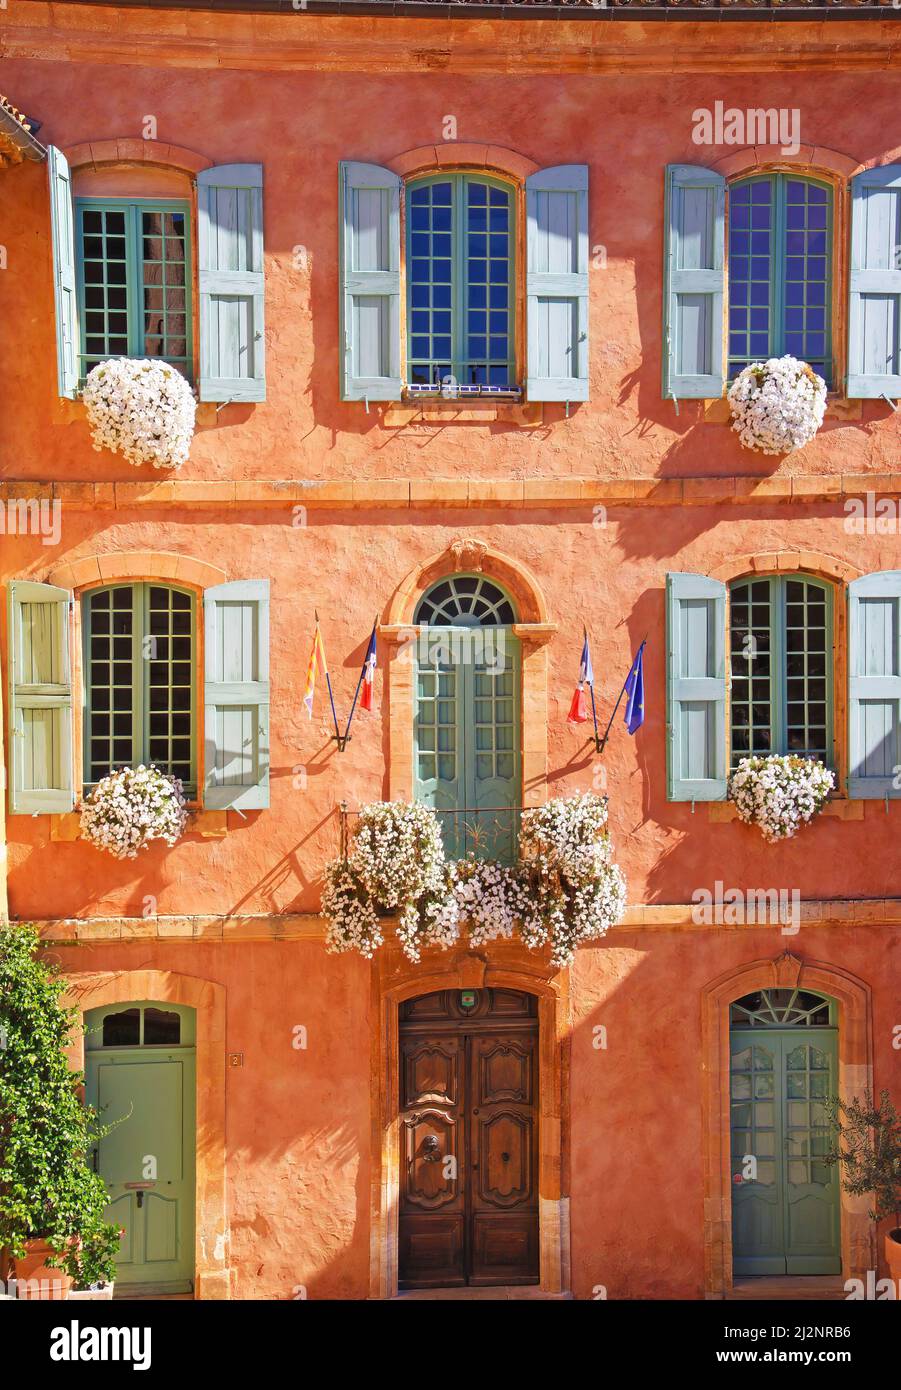 Vue sur la façade traditionnelle de la maison murale ocre en pierre naturelle, arrangements floraux, volets en bois de la vieille fenêtre - Hôtel de ville Roussillon, France Banque D'Images